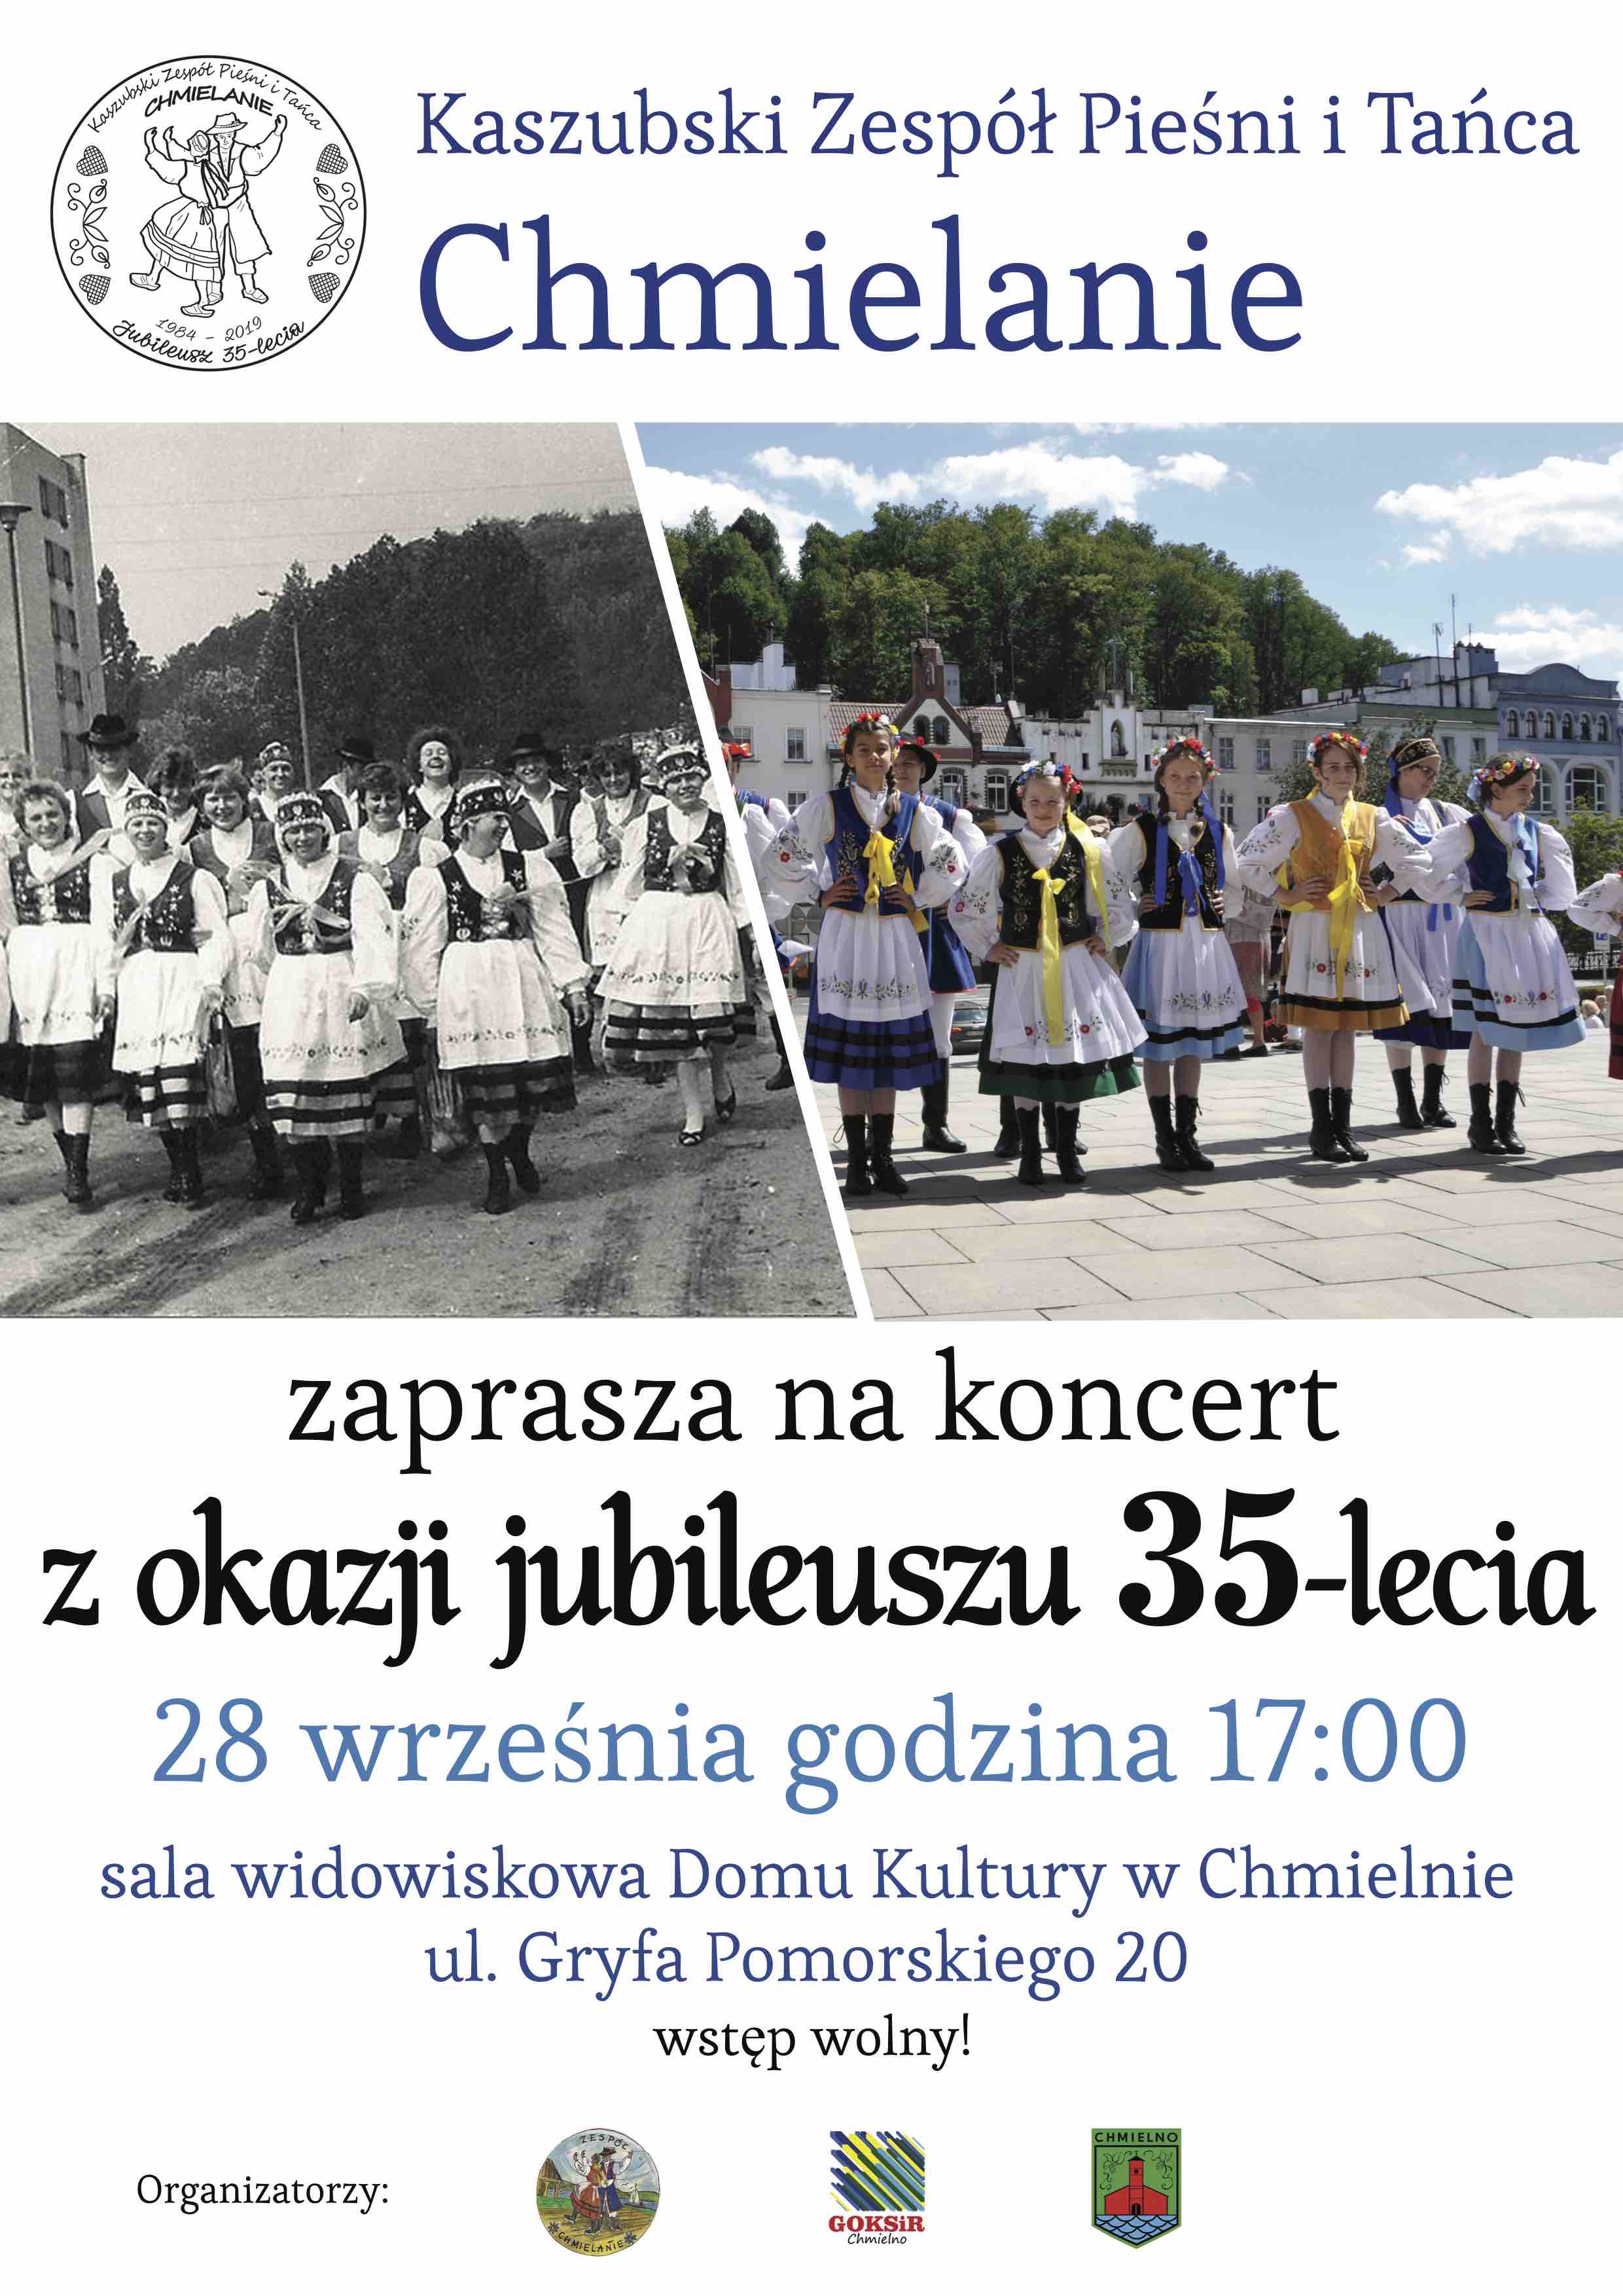 35-lecie KZPiT Chmielanie - koncert